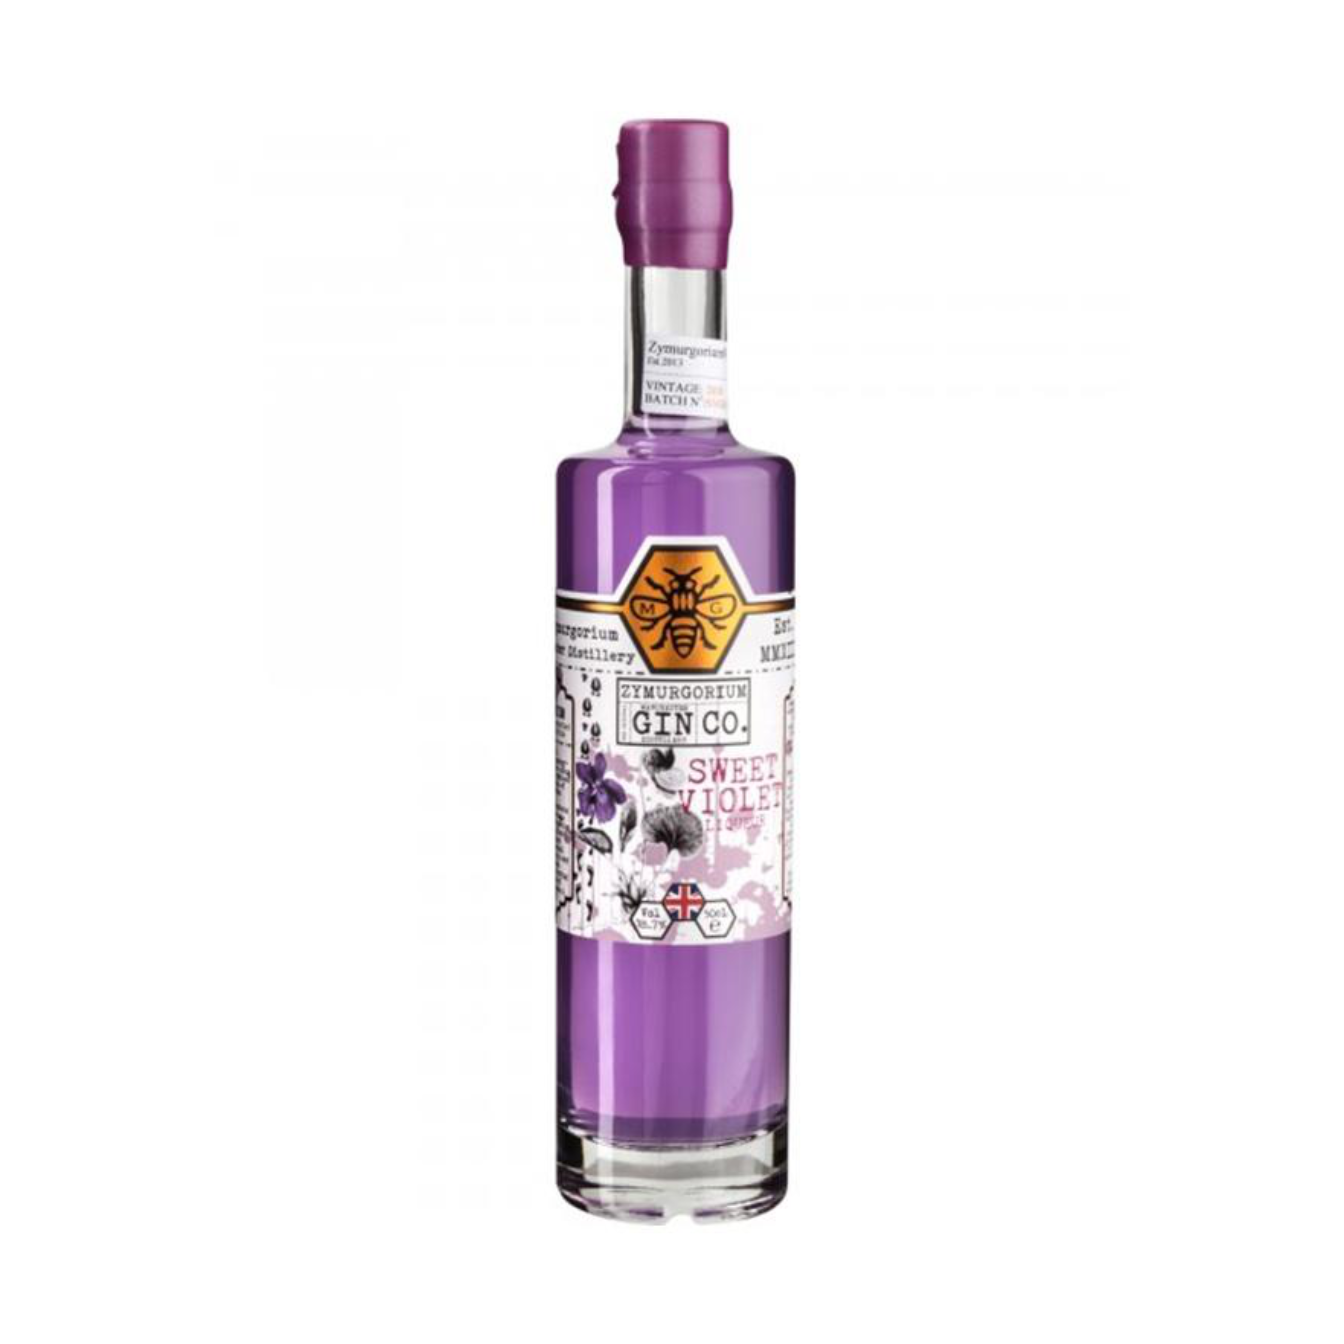 Zymurgorium Sweet Violet Gin Liqueur